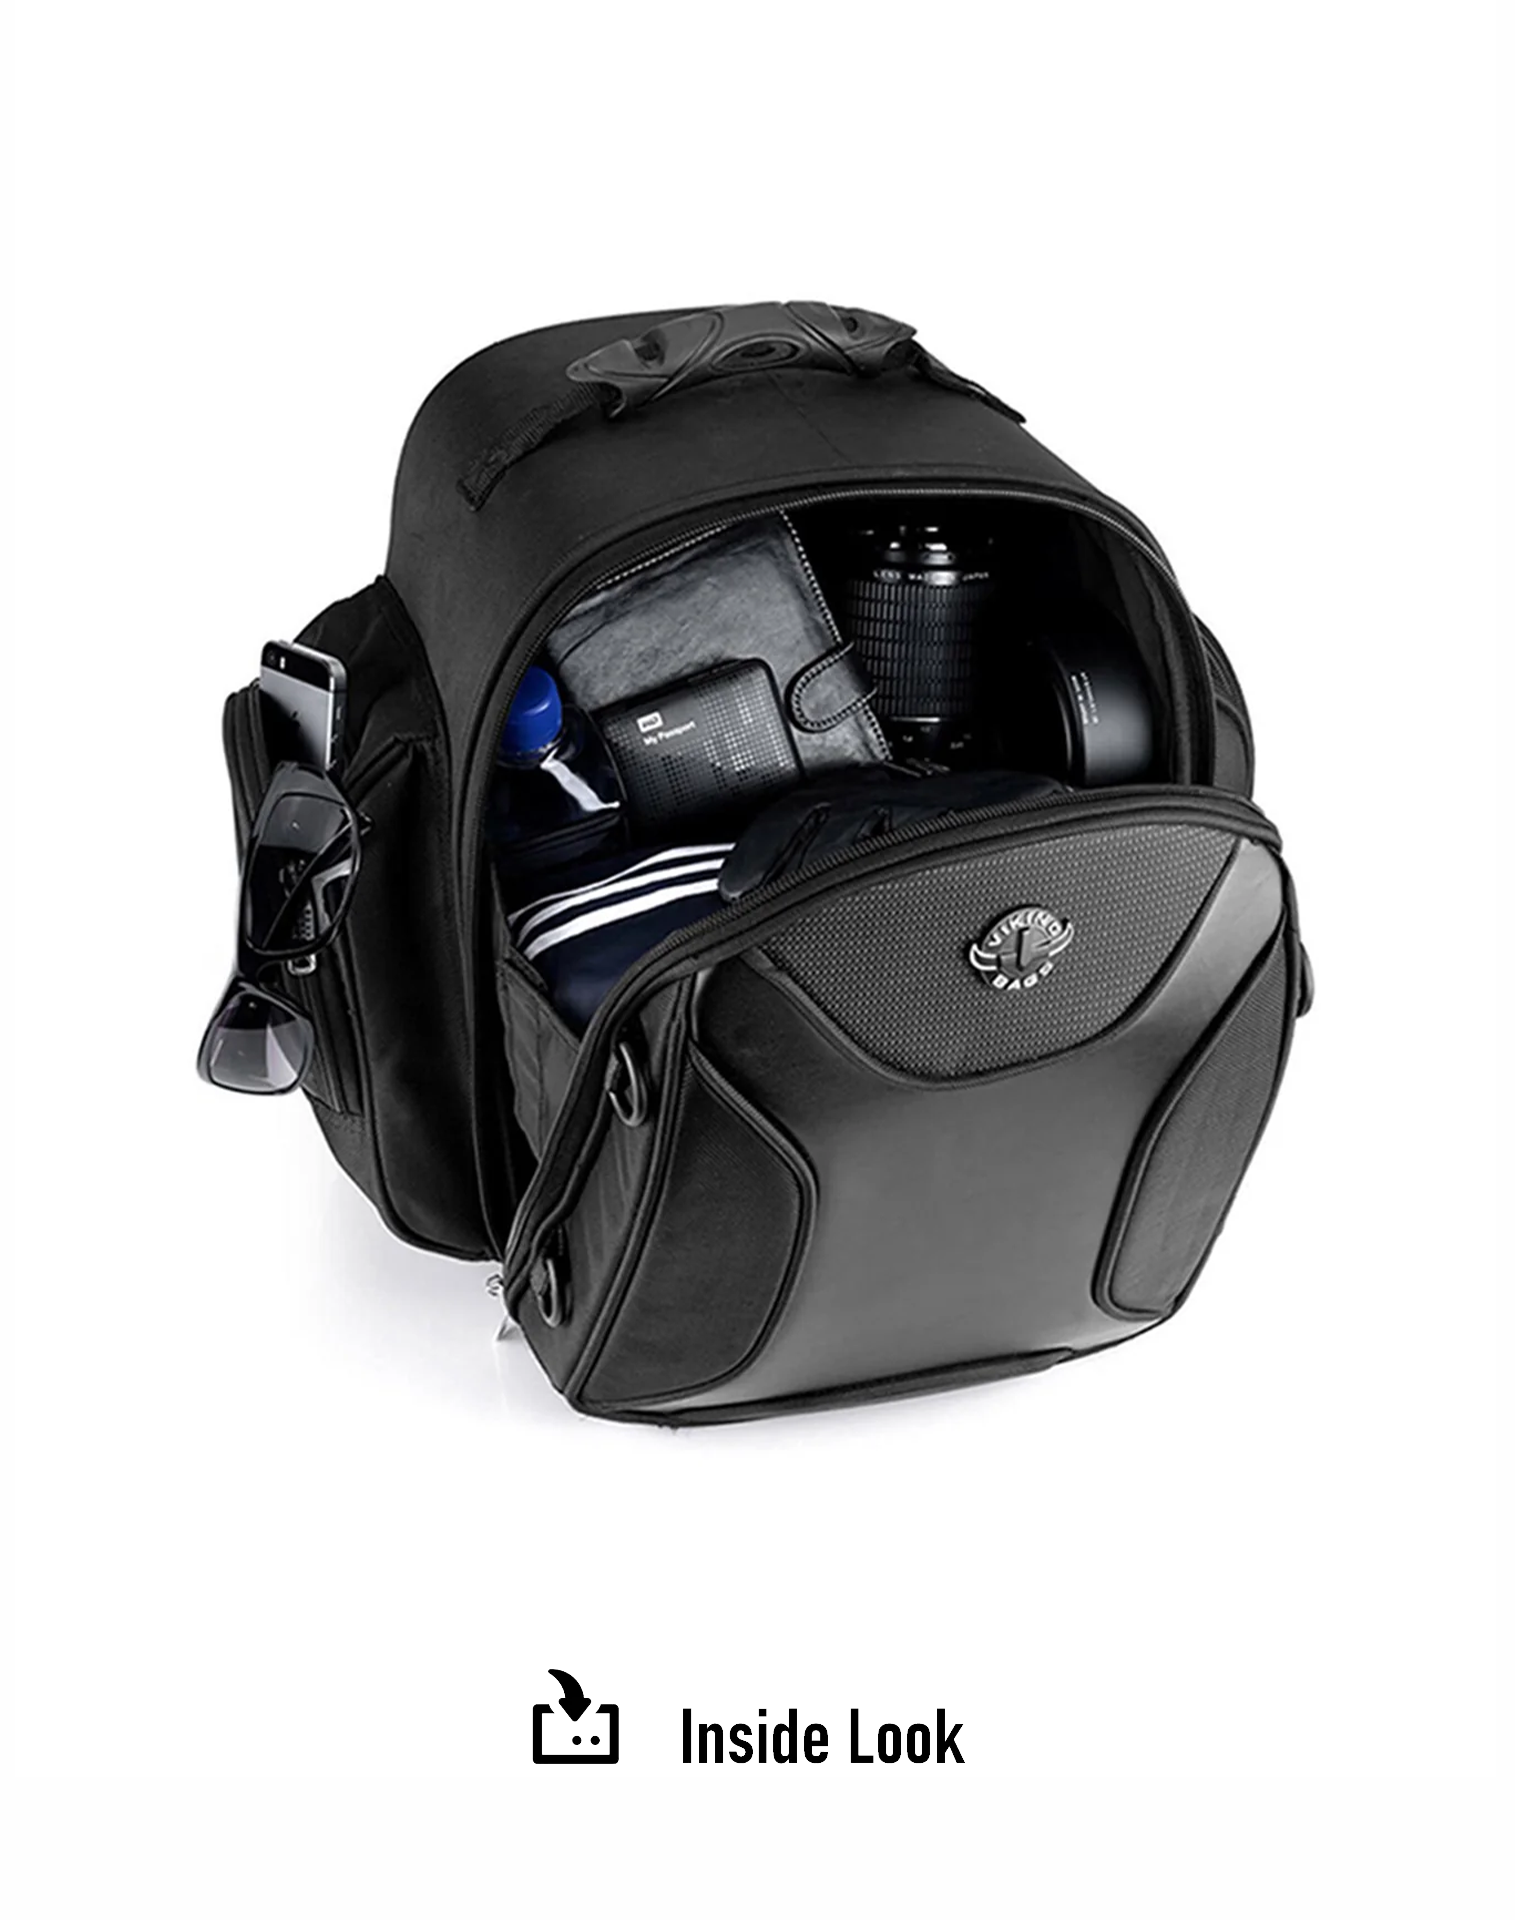 22L - Dagr Medium Hysoung Motorcycle Sissy Bar Bag